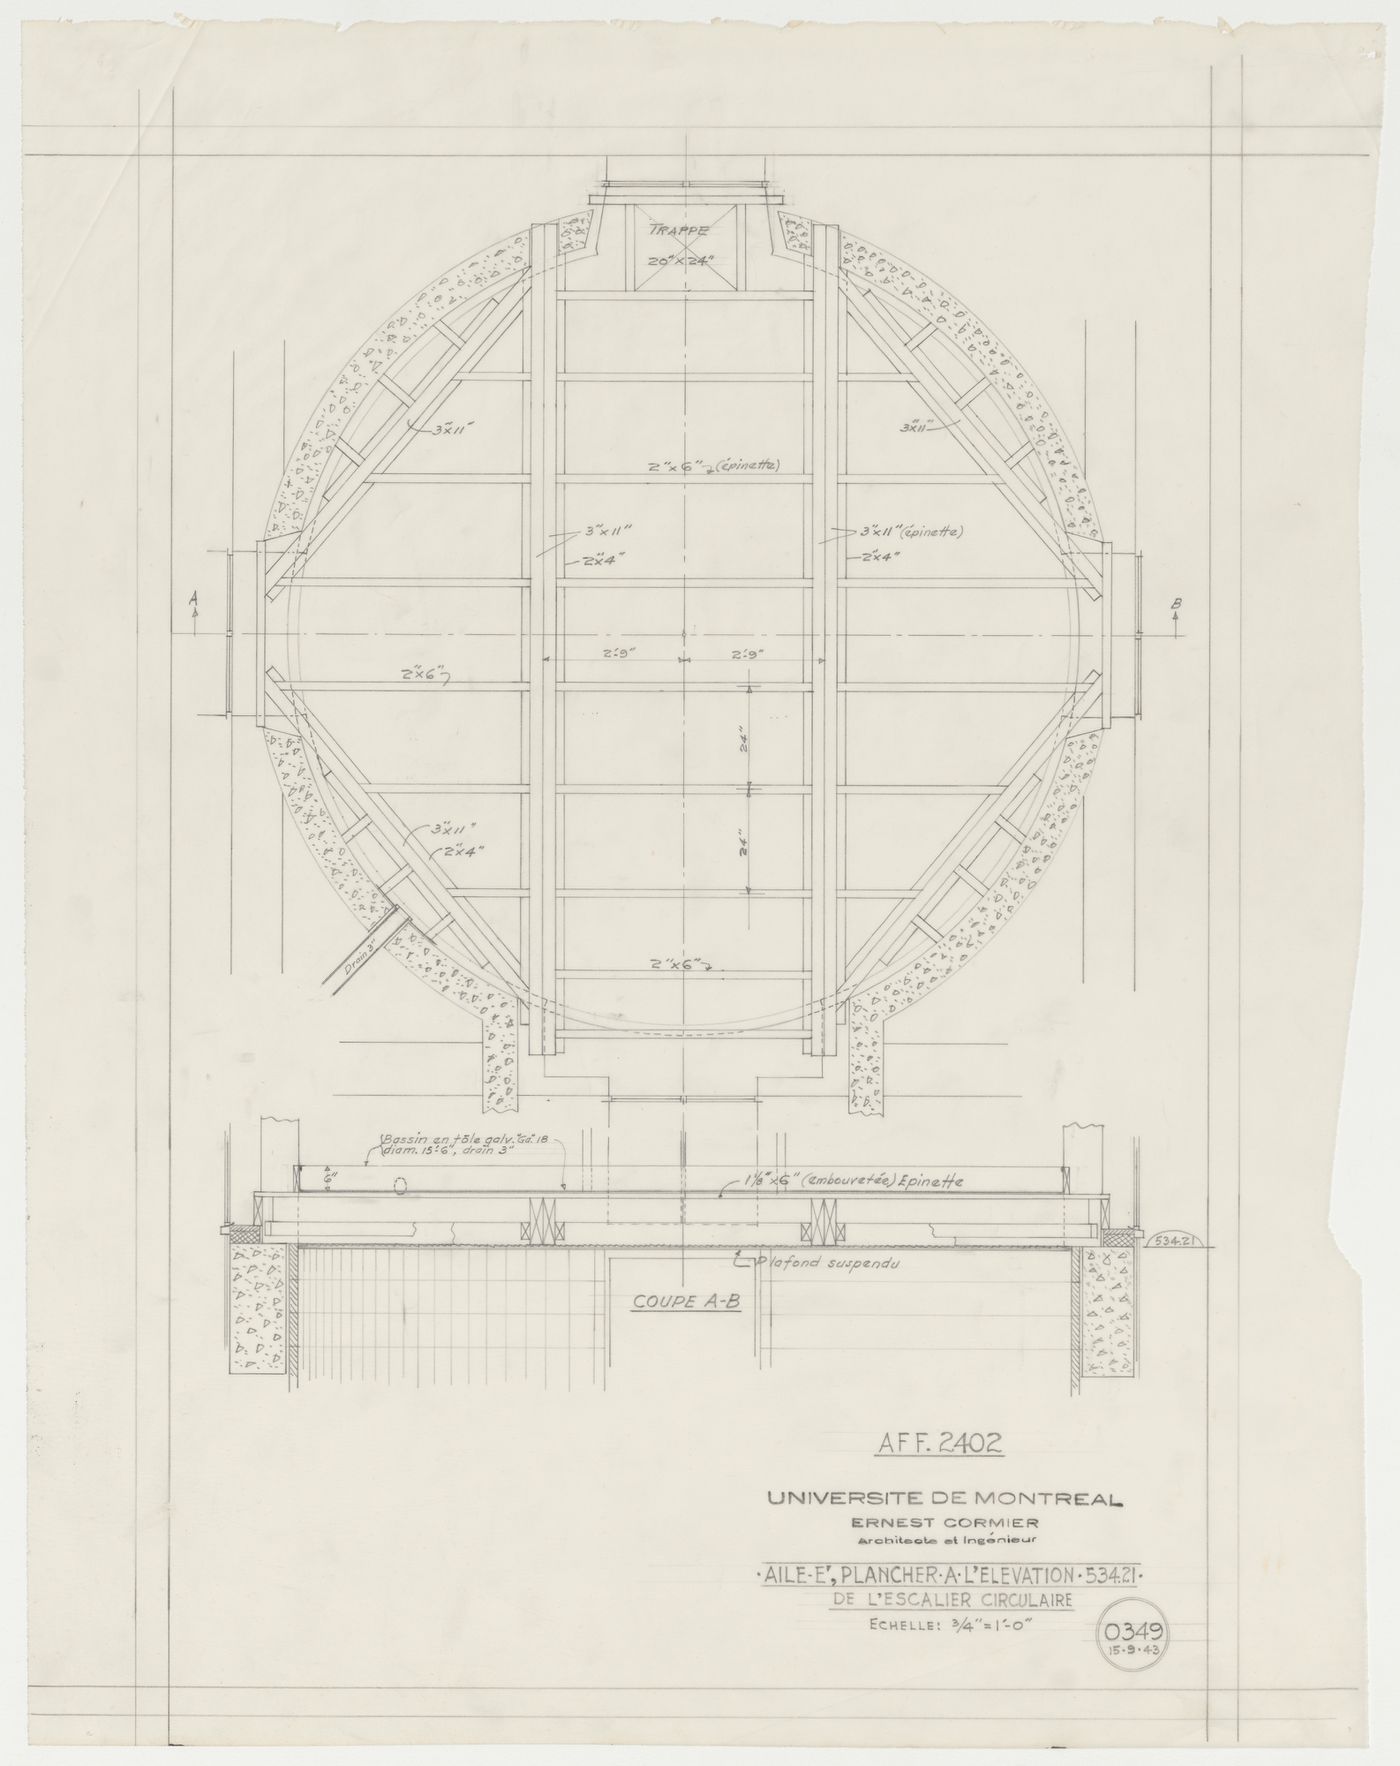 Plancher à l'élévation de l'escalier circulaire, Pavillon principal et campus, Université de Montréal, Montréal, Canada (1924-1947)